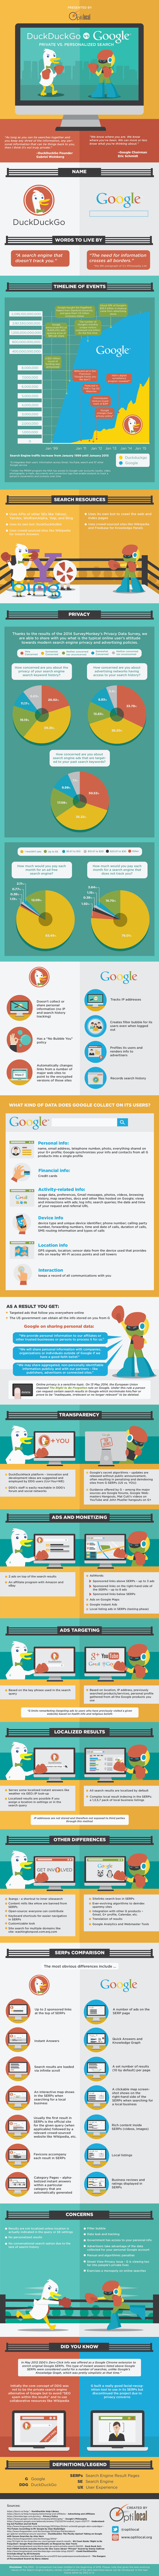 Private vs Personalized Search: Duck Duck Go vs Google